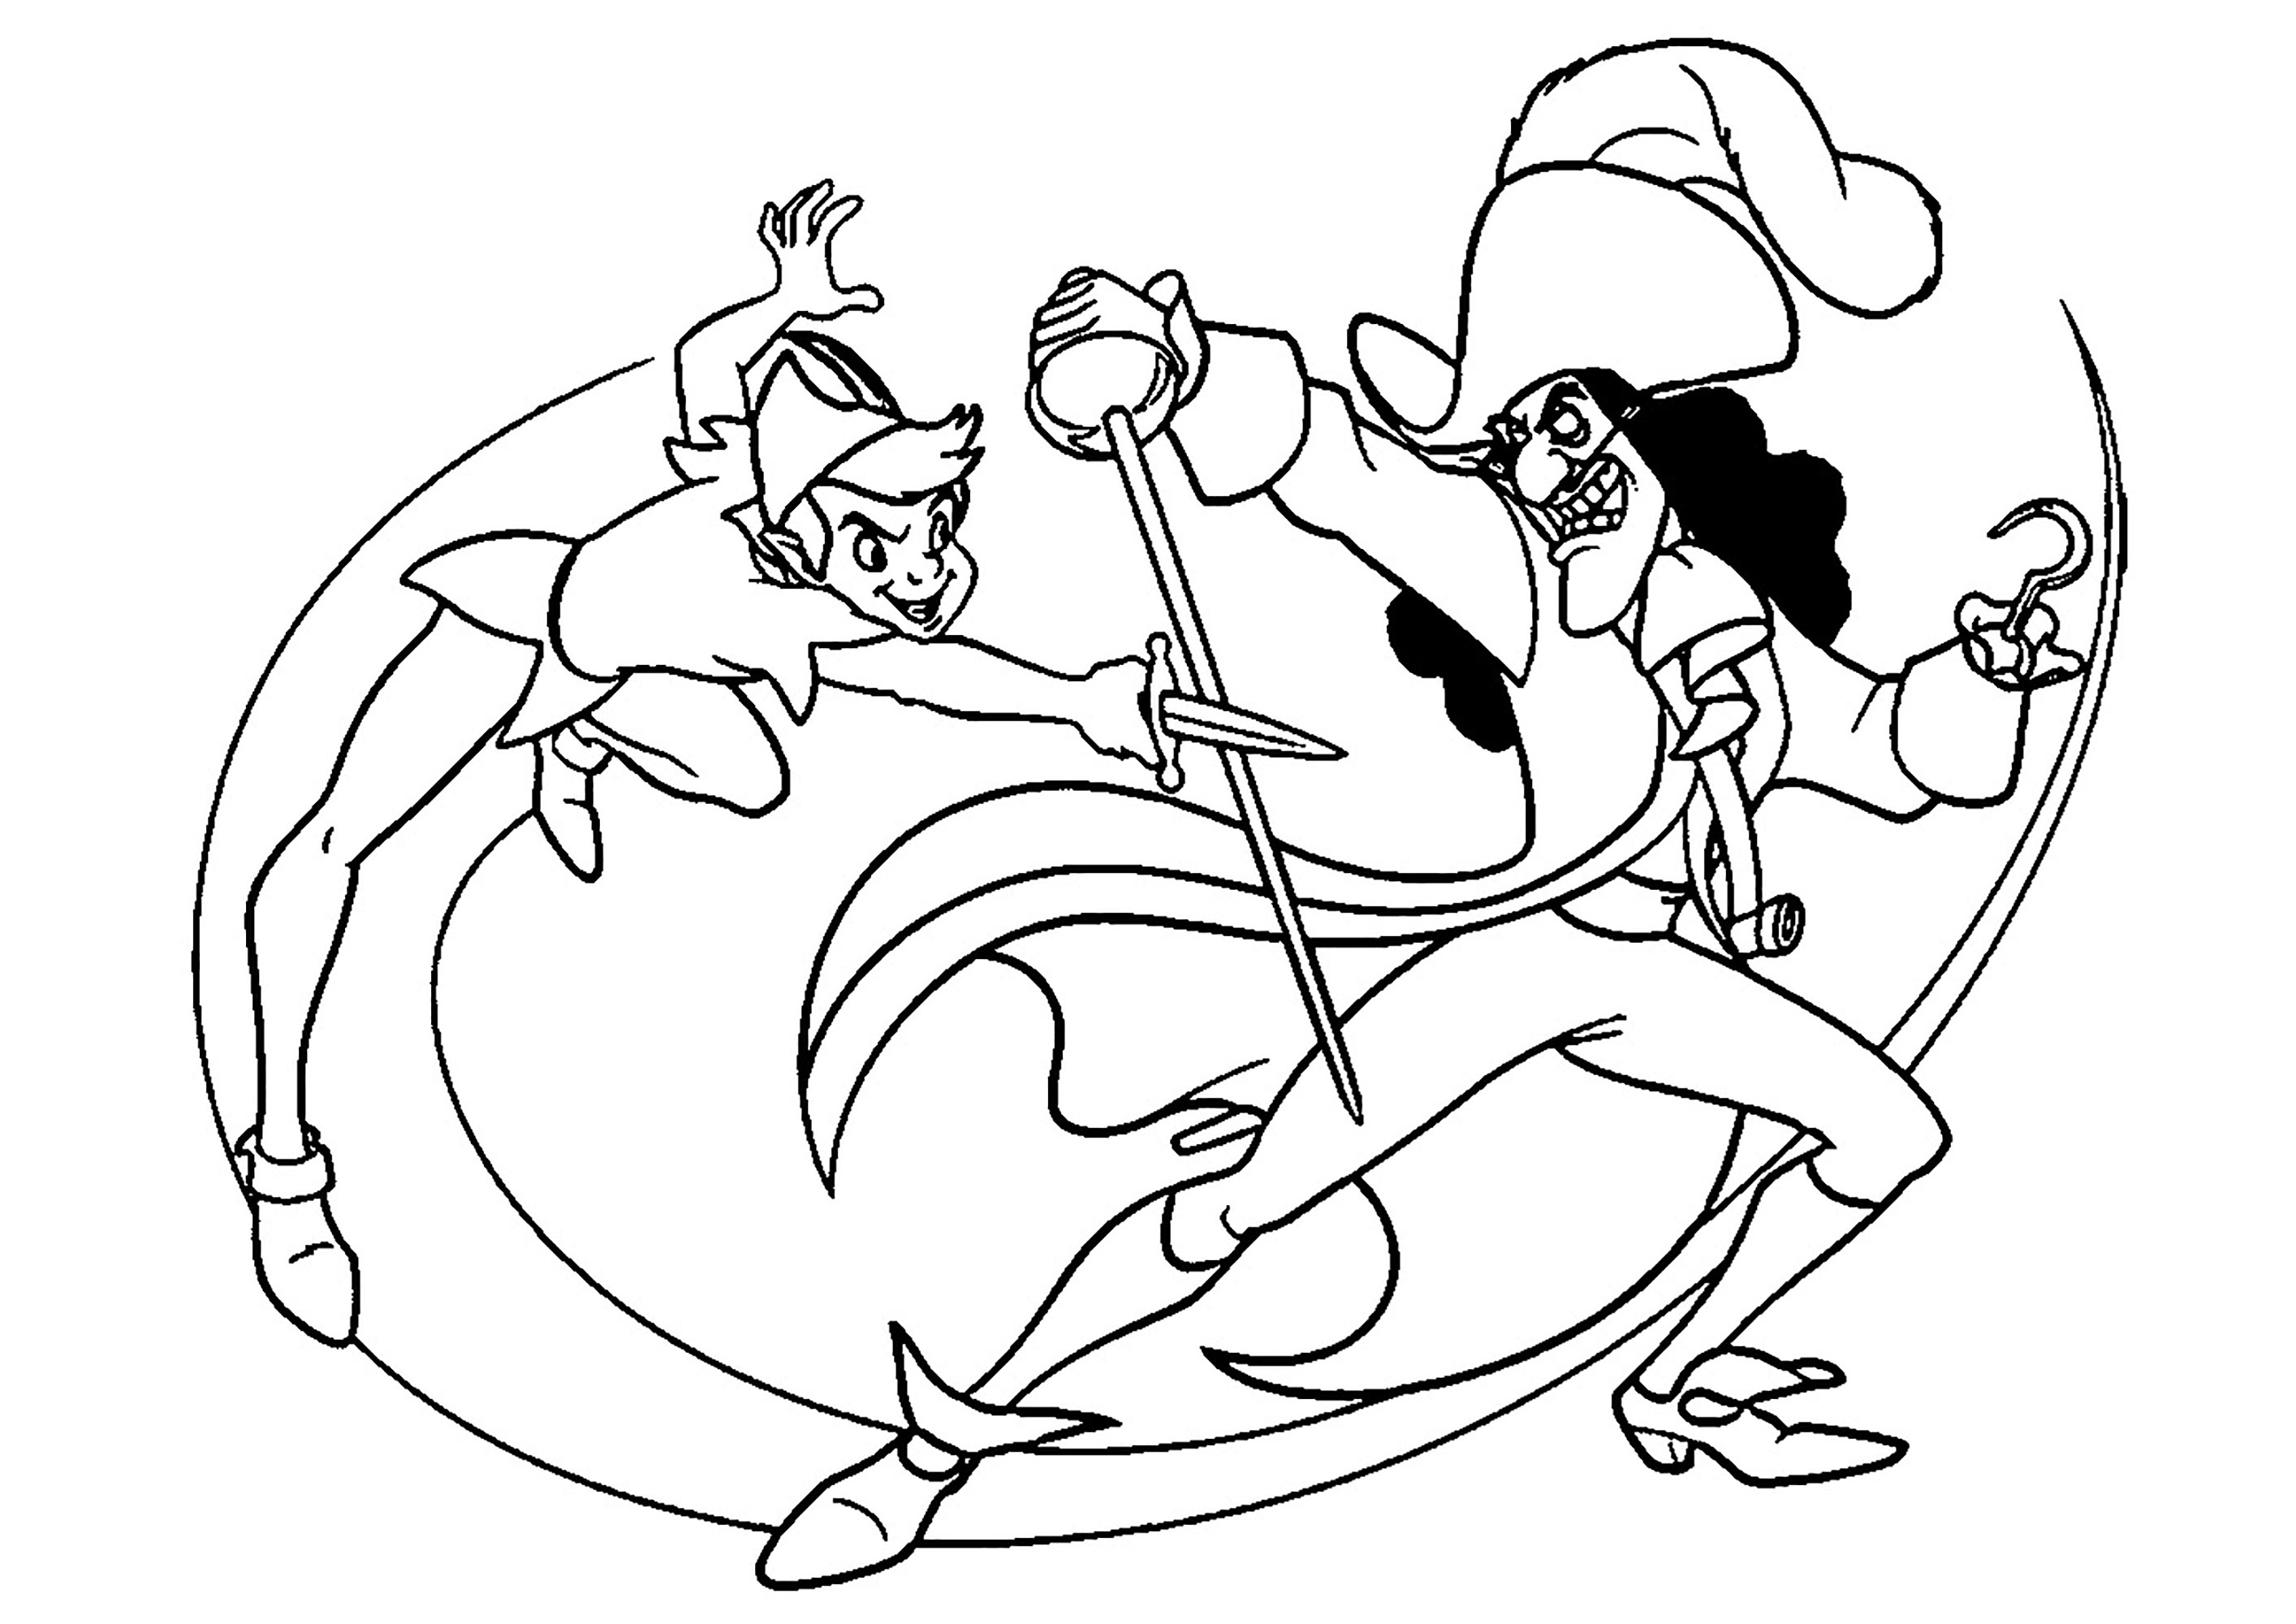 Sword fight between Peter Pan and Captain Hook